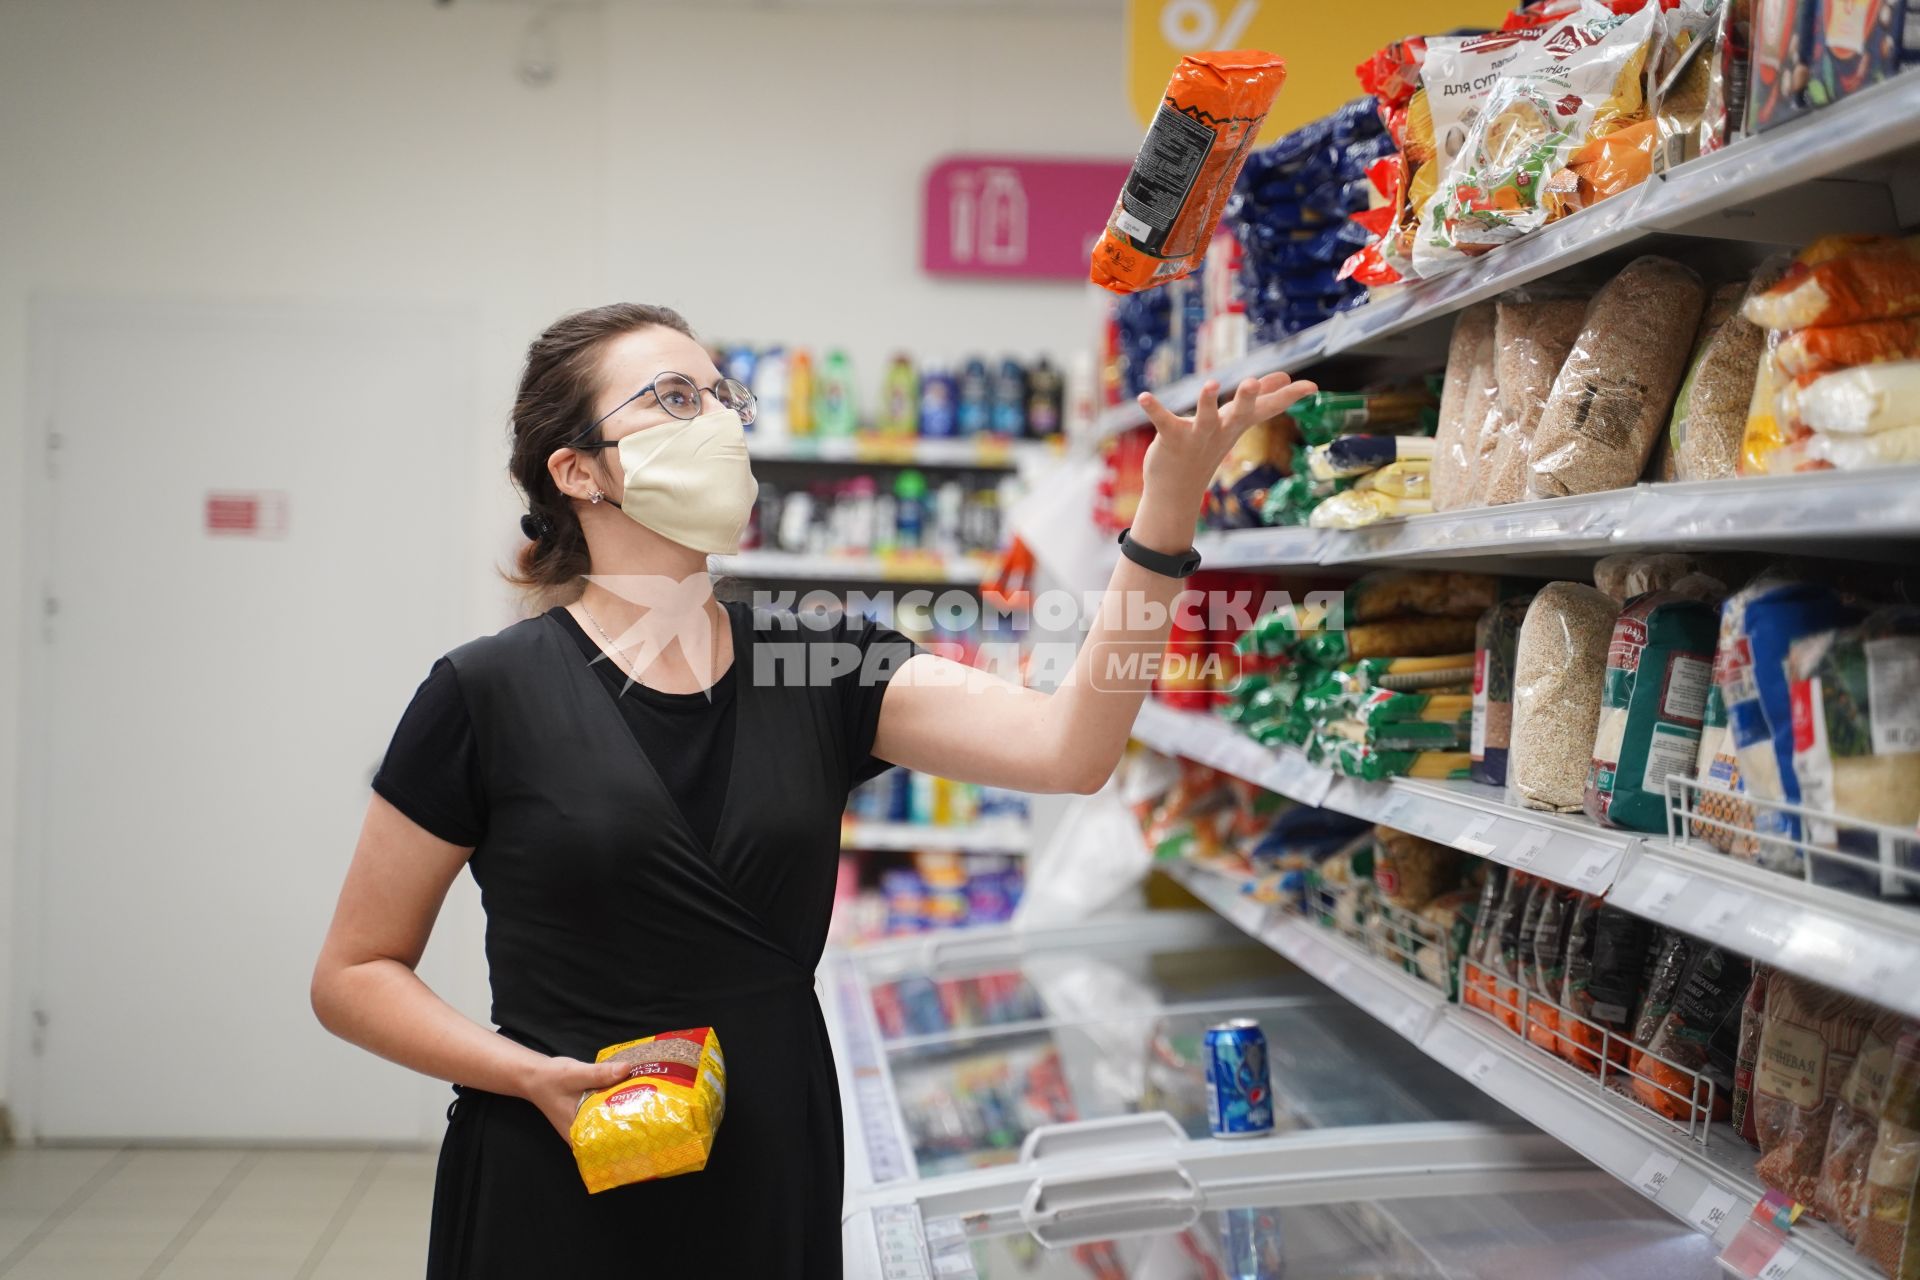 Самара. Женщина в медицинской маске в продуктовом магазине.